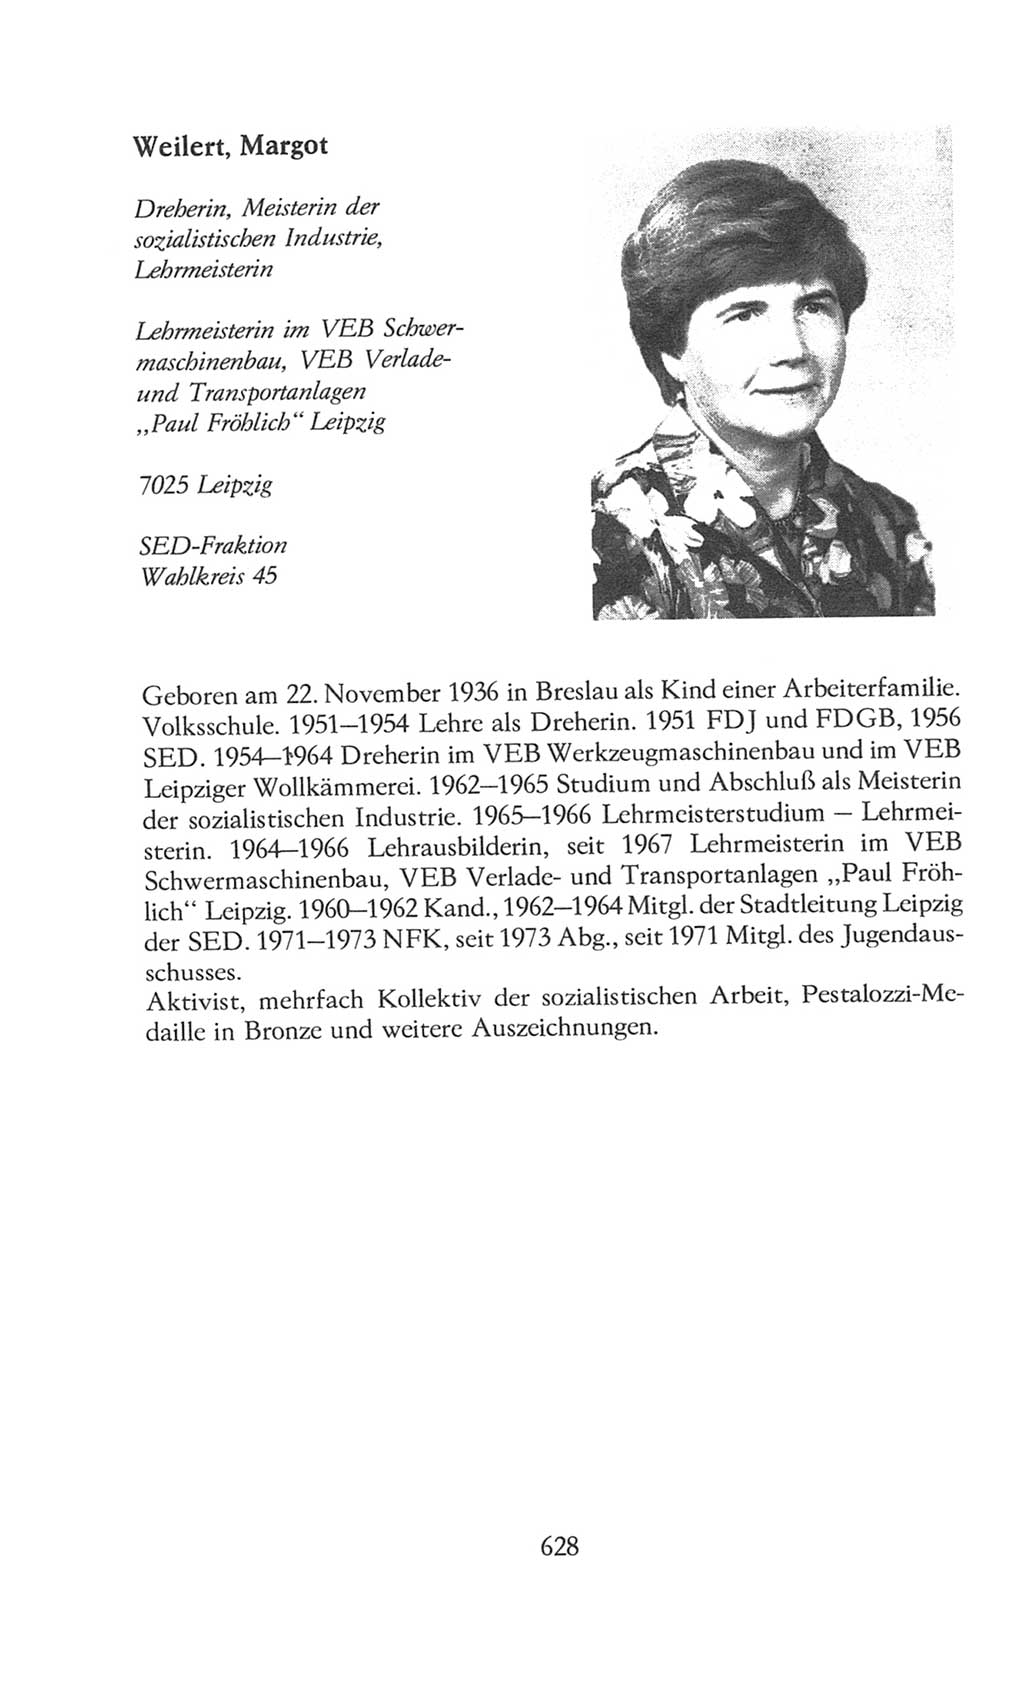 Volkskammer (VK) der Deutschen Demokratischen Republik (DDR), 8. Wahlperiode 1981-1986, Seite 628 (VK. DDR 8. WP. 1981-1986, S. 628)